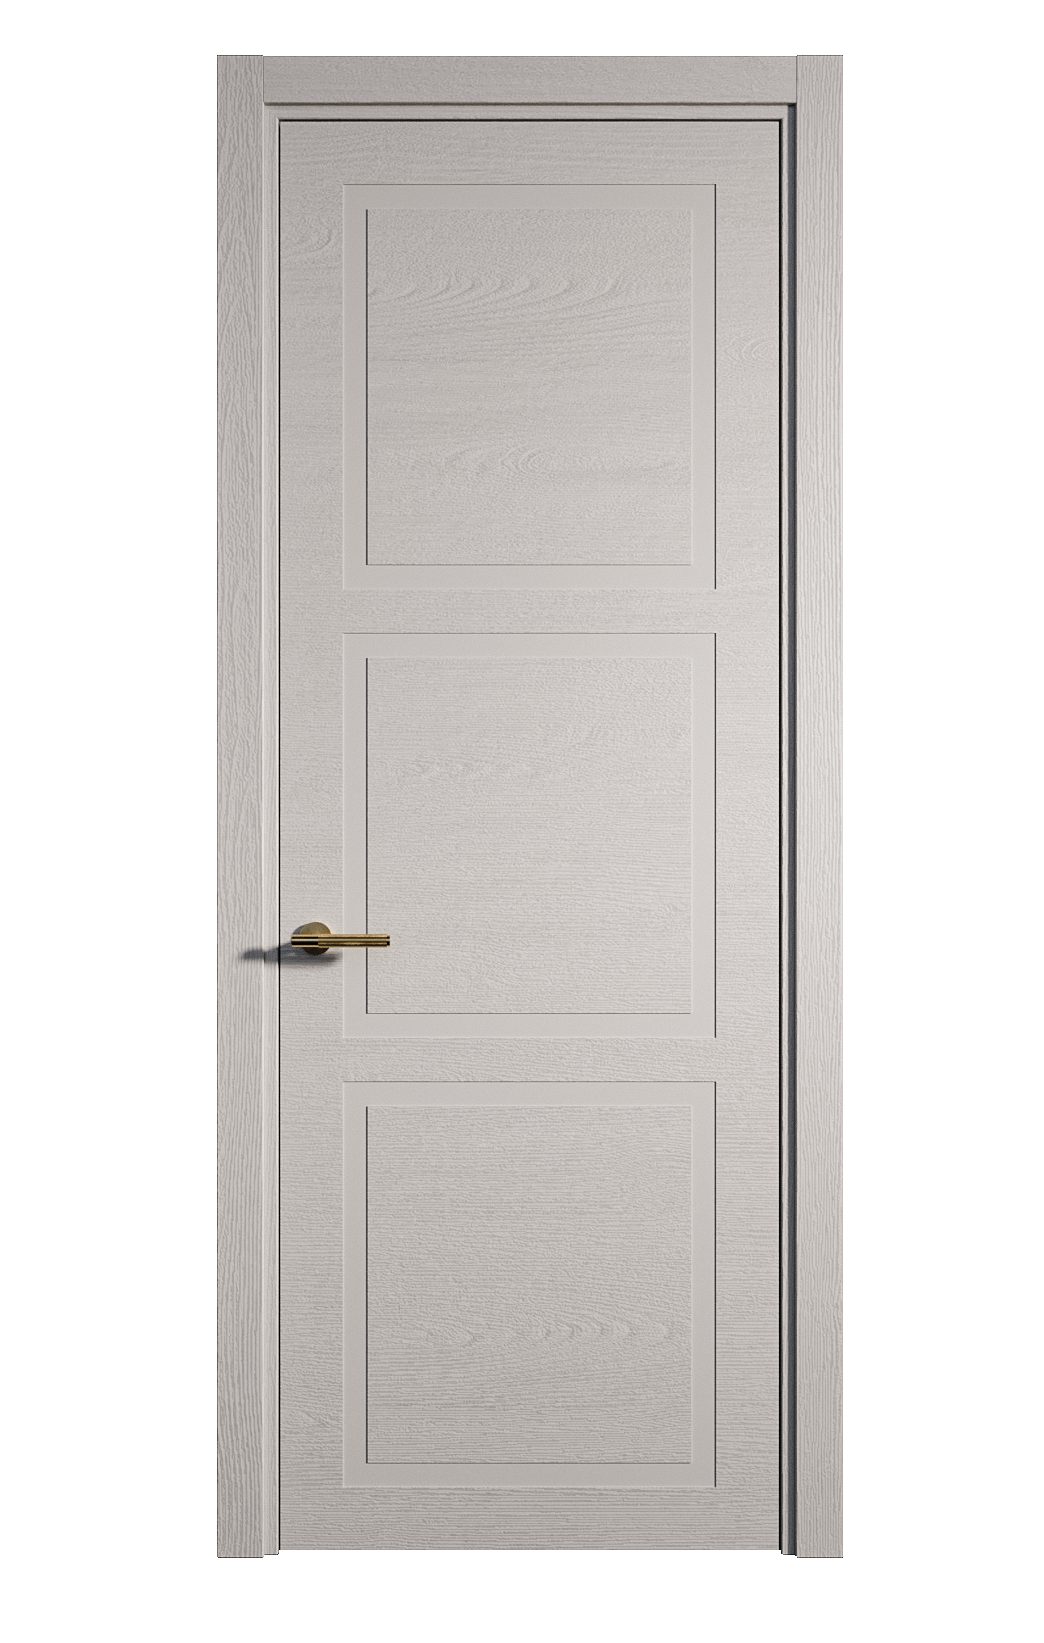 Межкомнатная дверь Бостон-3 глухая эмаль ral 7047 24476